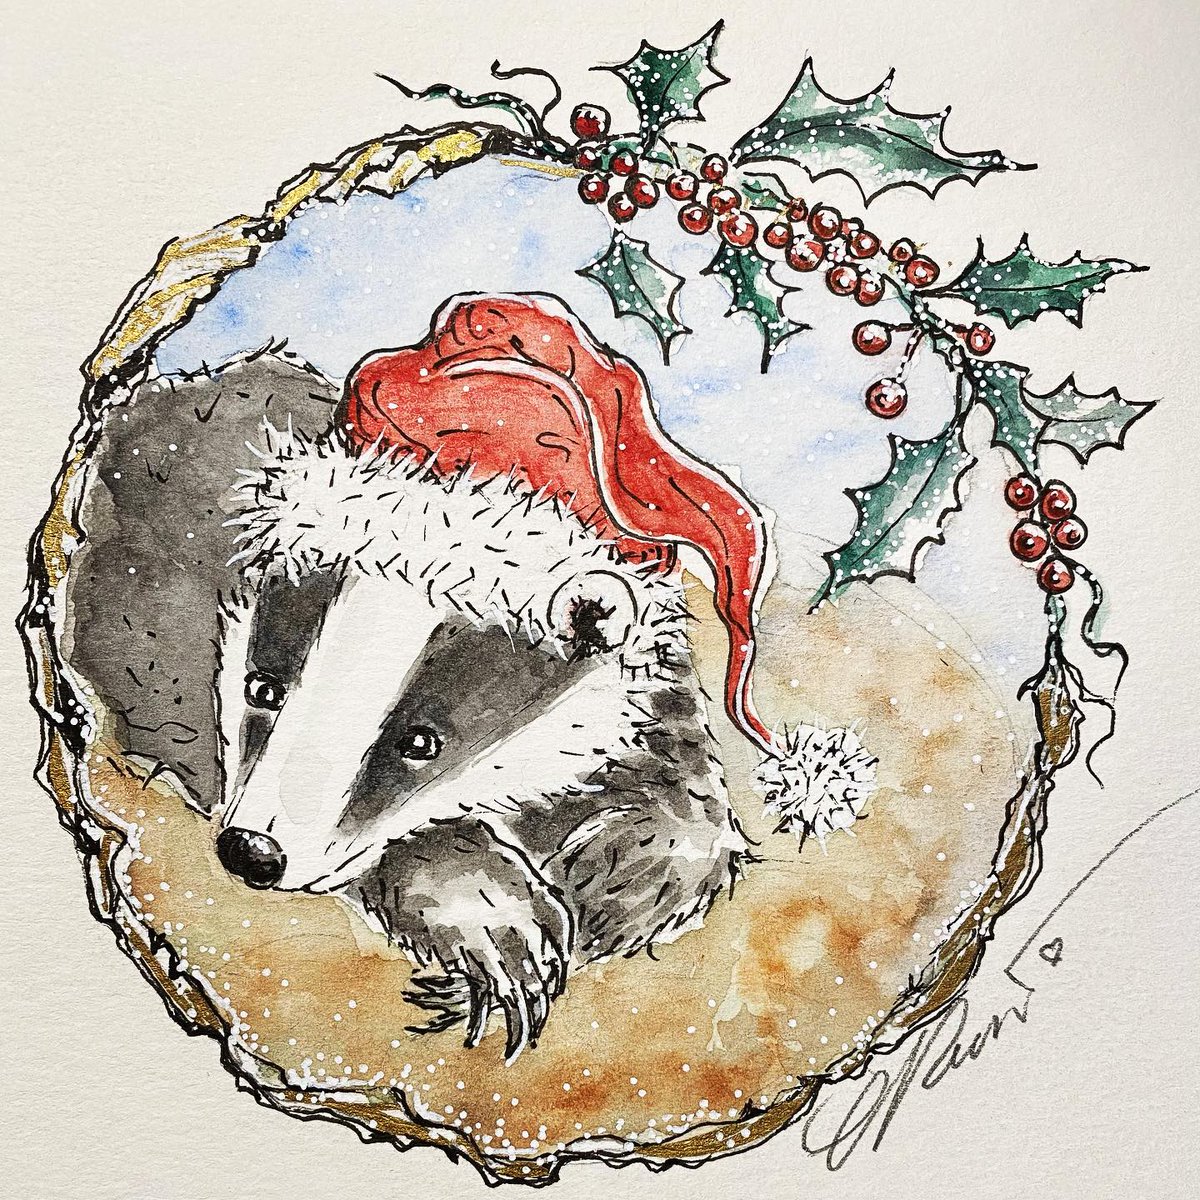 Badger, Christmas Badger, Limited Edition Print, Hand Embellished, Fantasy Art, Yule, Christmas Art, etsy.me/2VFYkPq via @Etsy 
#carolinarussoart #badger #christmasillustration #prints #christmasbadger #12daywinterdraw